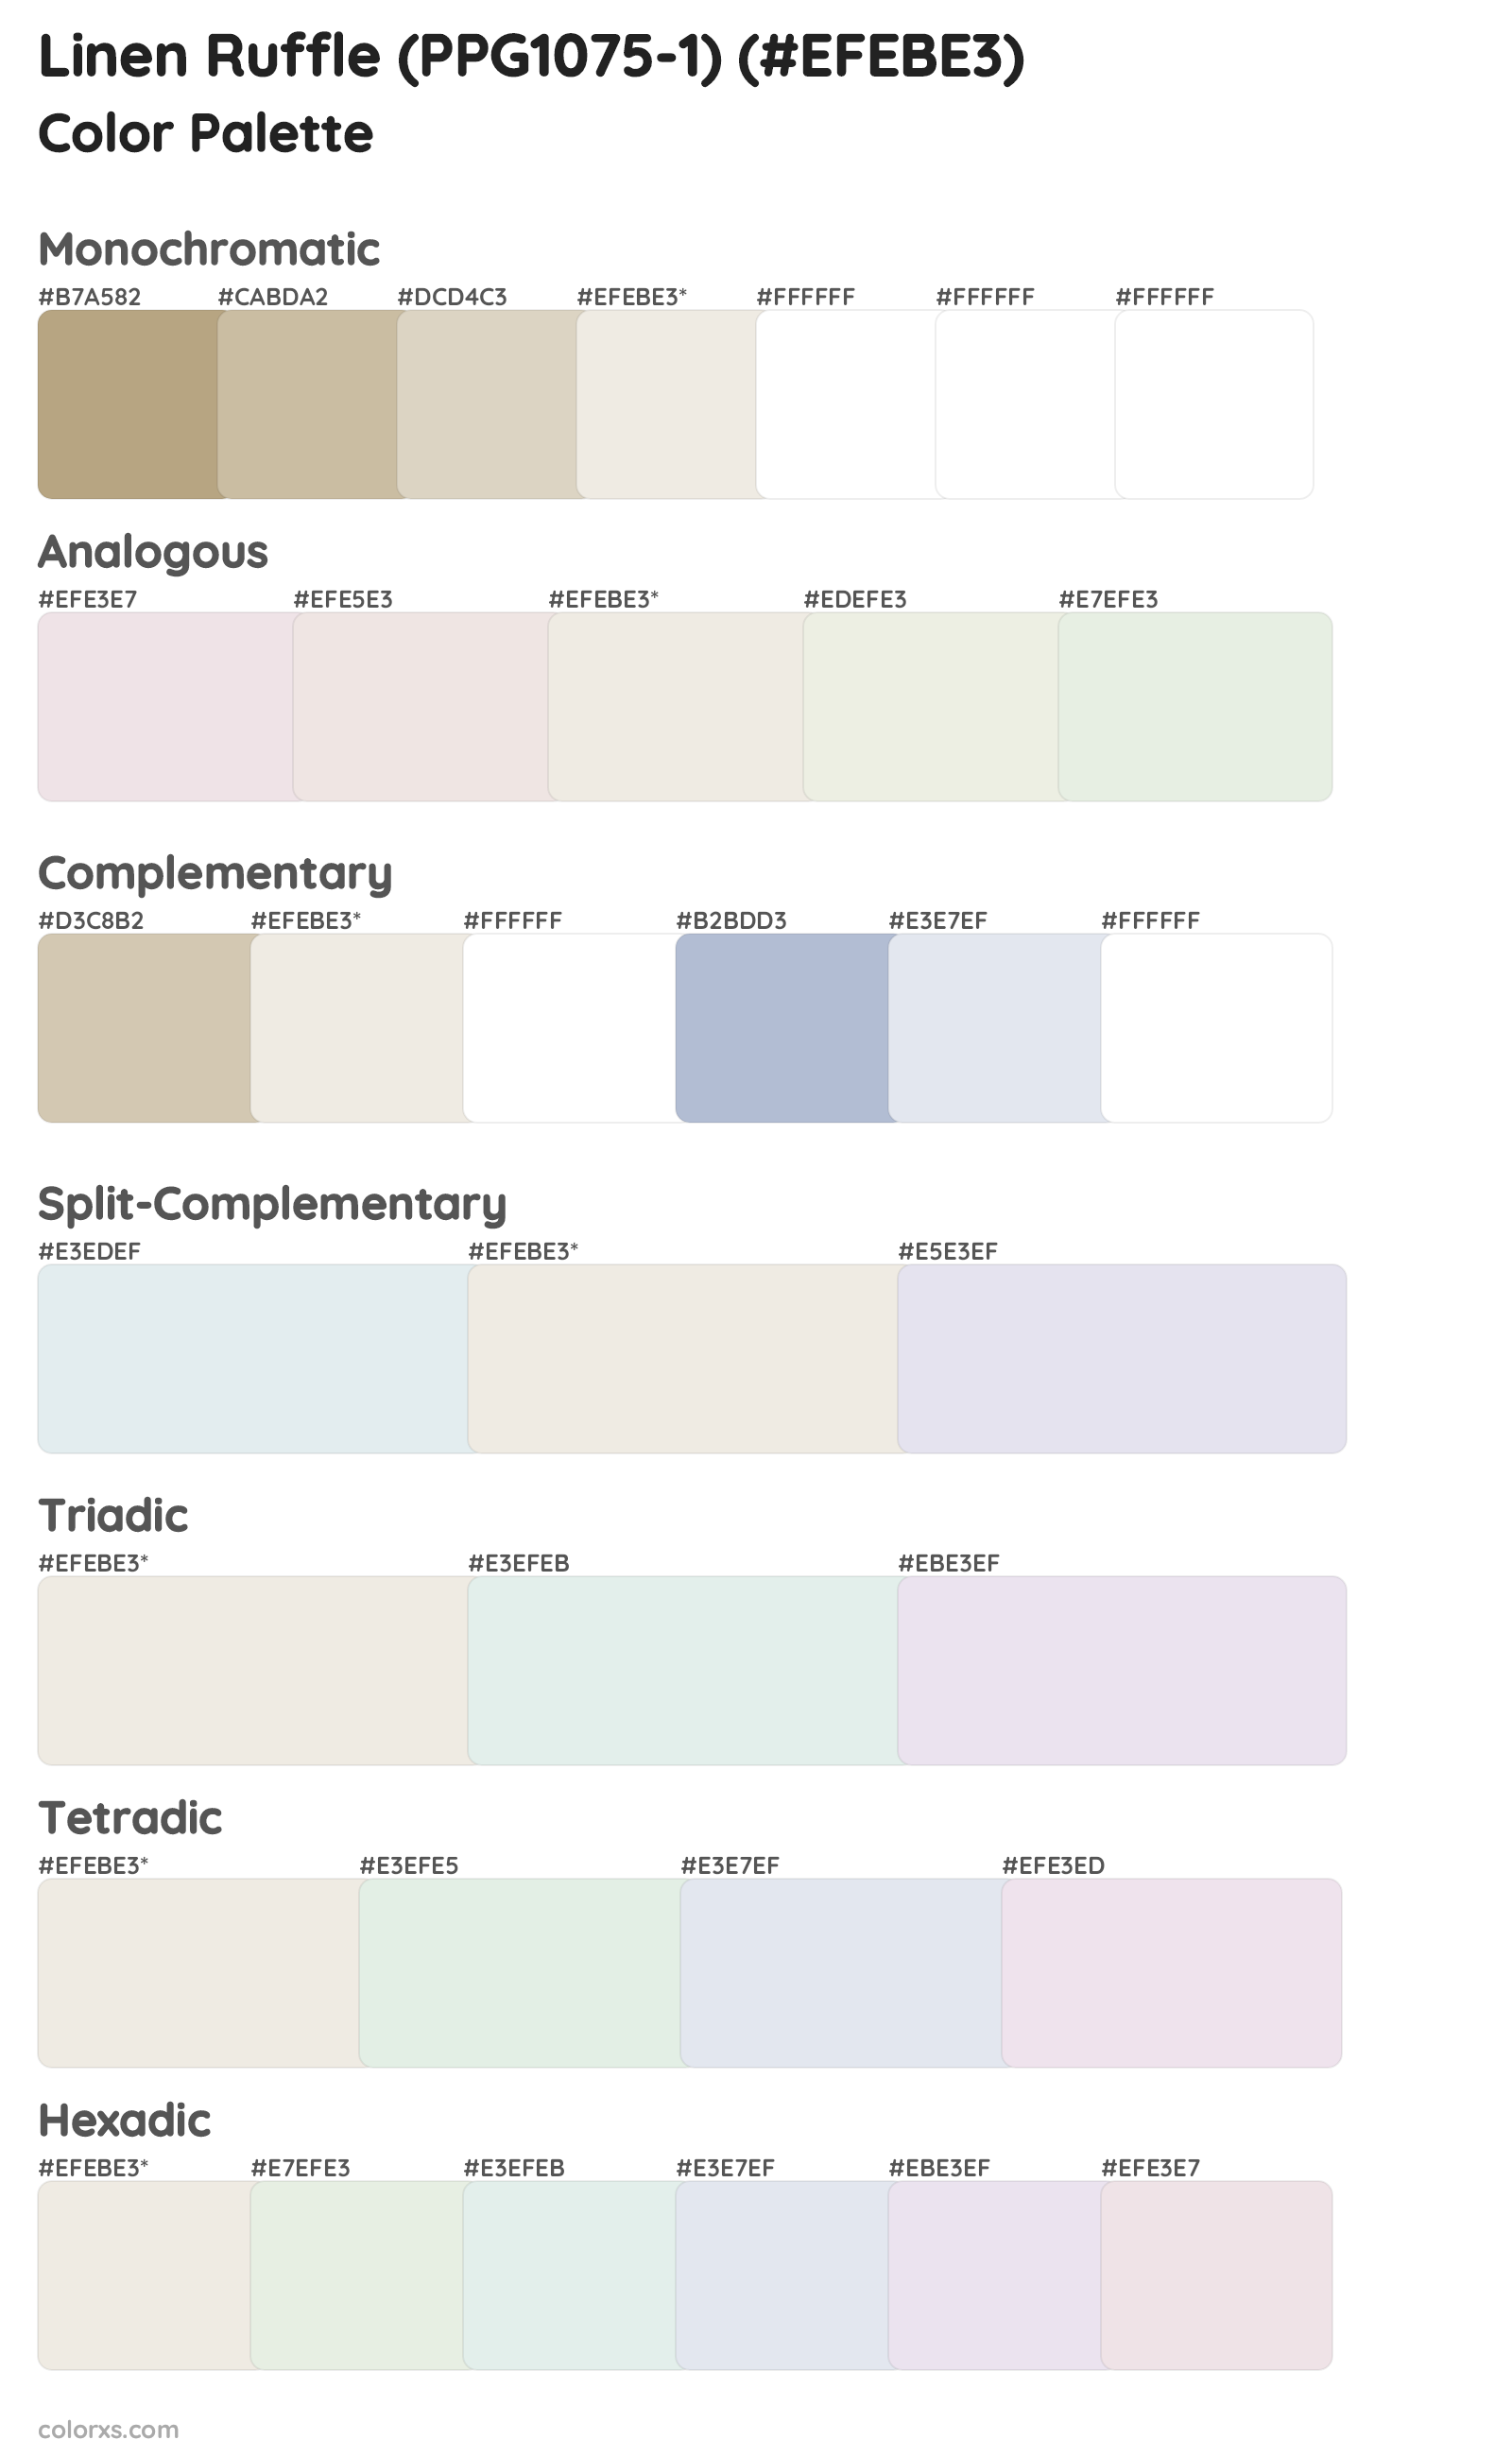 Linen Ruffle (PPG1075-1) Color Scheme Palettes